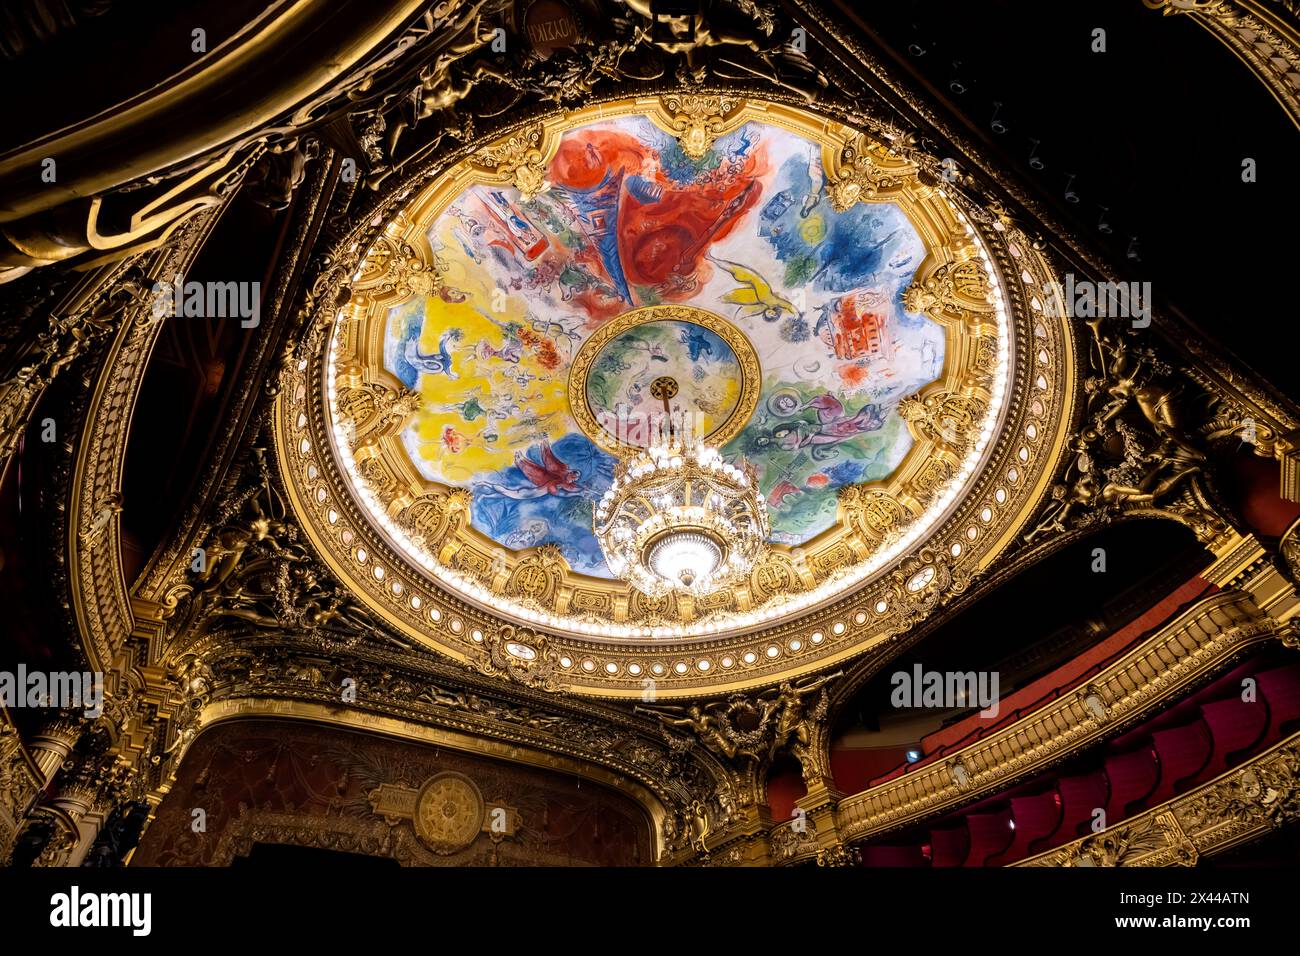 Belle peinture au plafond par Marc Chagal de la coupole dans l'auditorium de l'Opéra Garnier. Le bâtiment de l'Opéra de Paris conçu par l'architecte Charles Garnier, Paris Banque D'Images